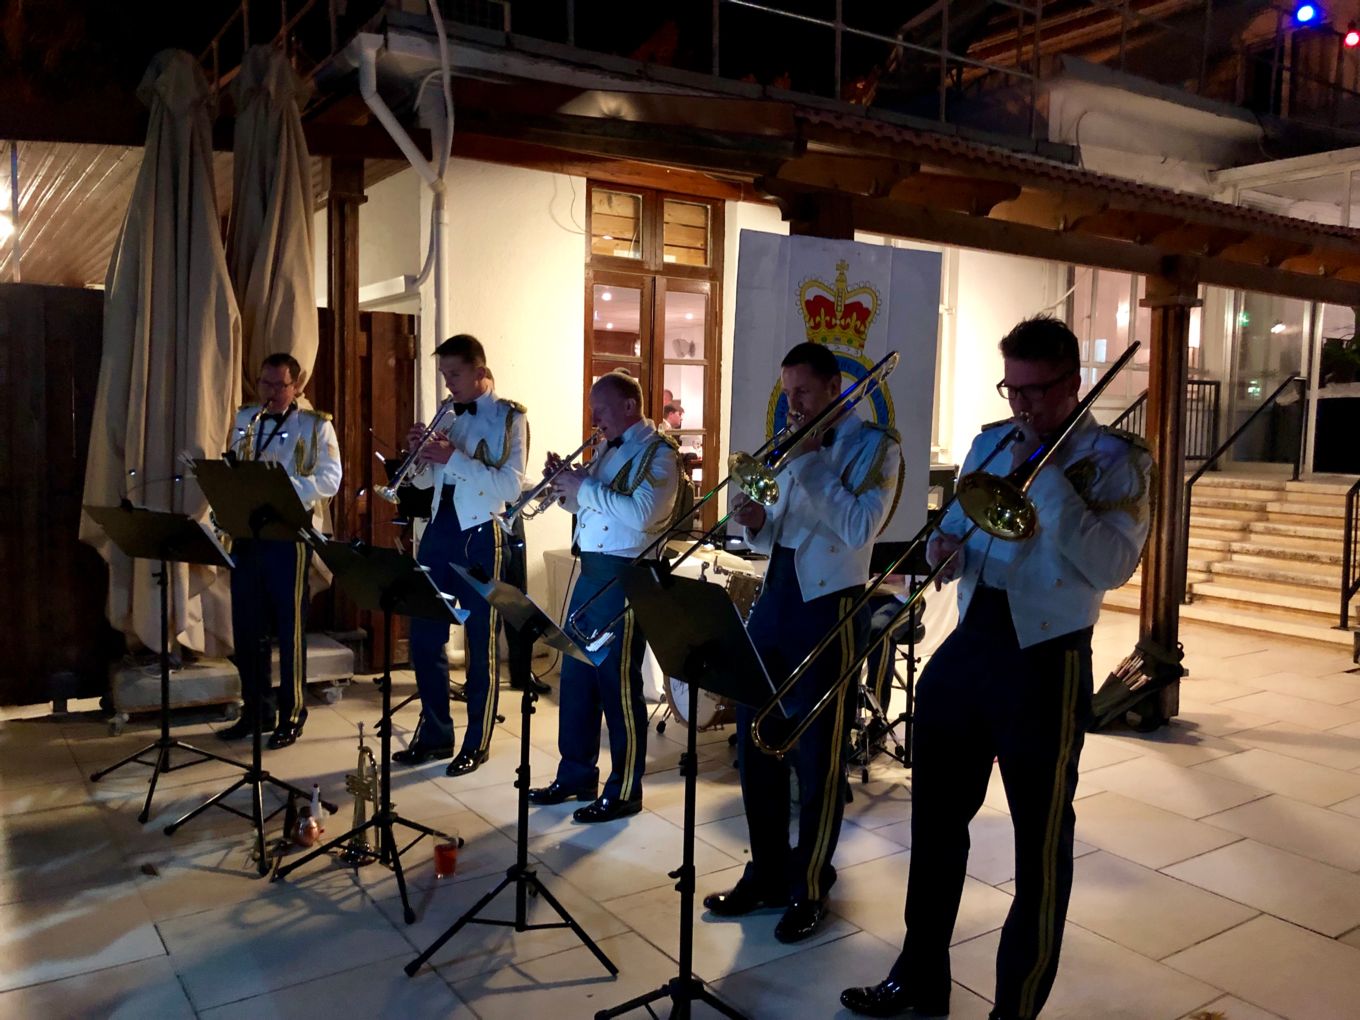 A uniformed brass quintet playing music.